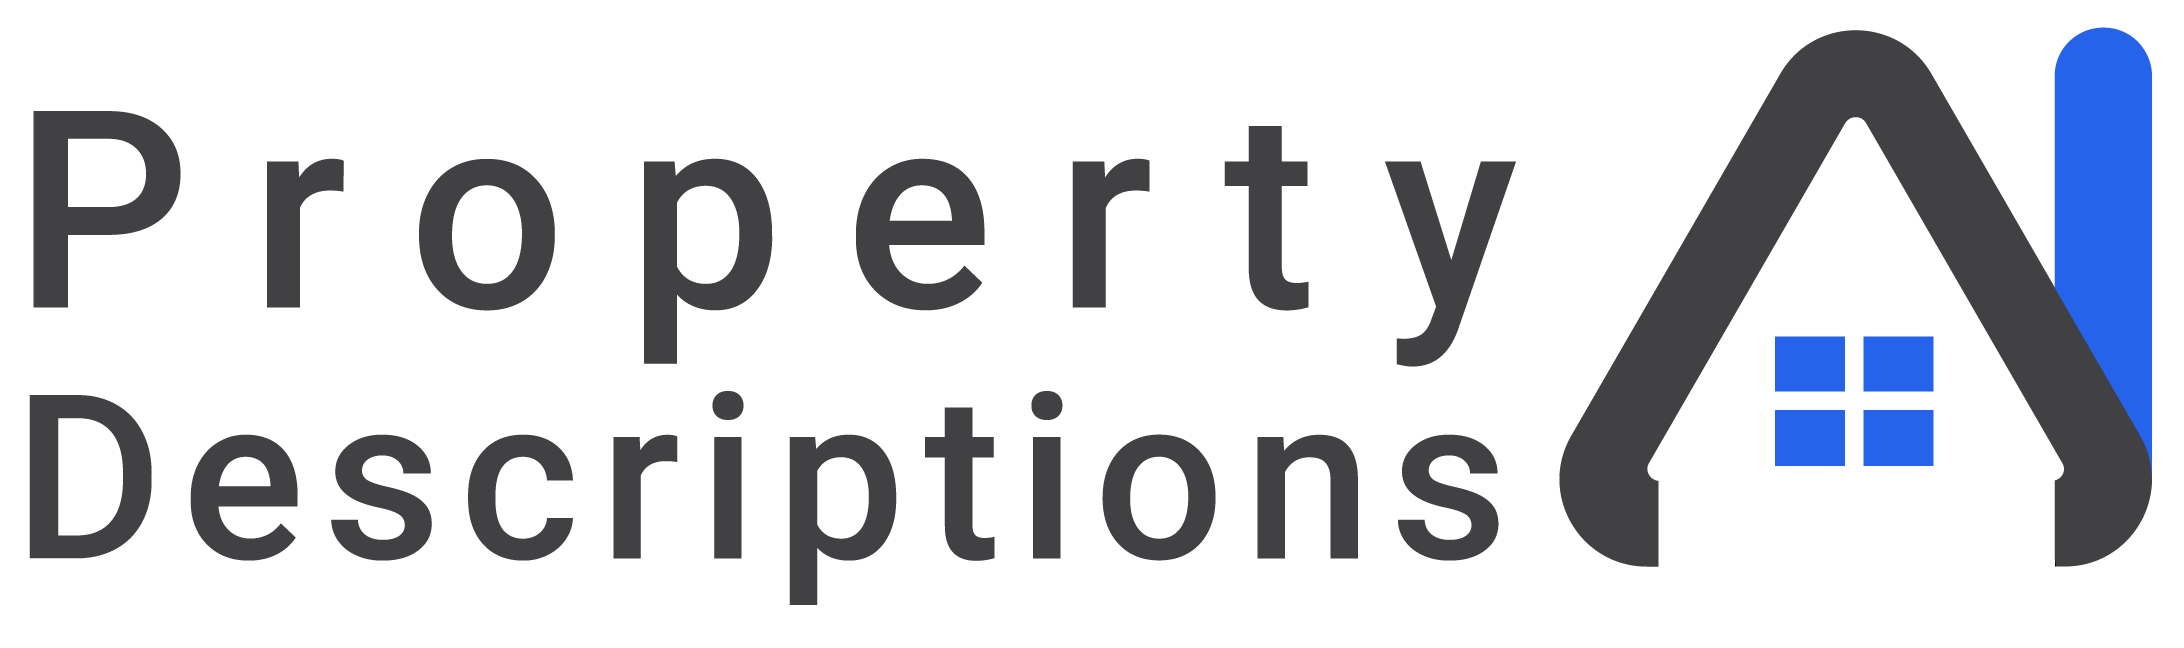 Property Descriptions Logo